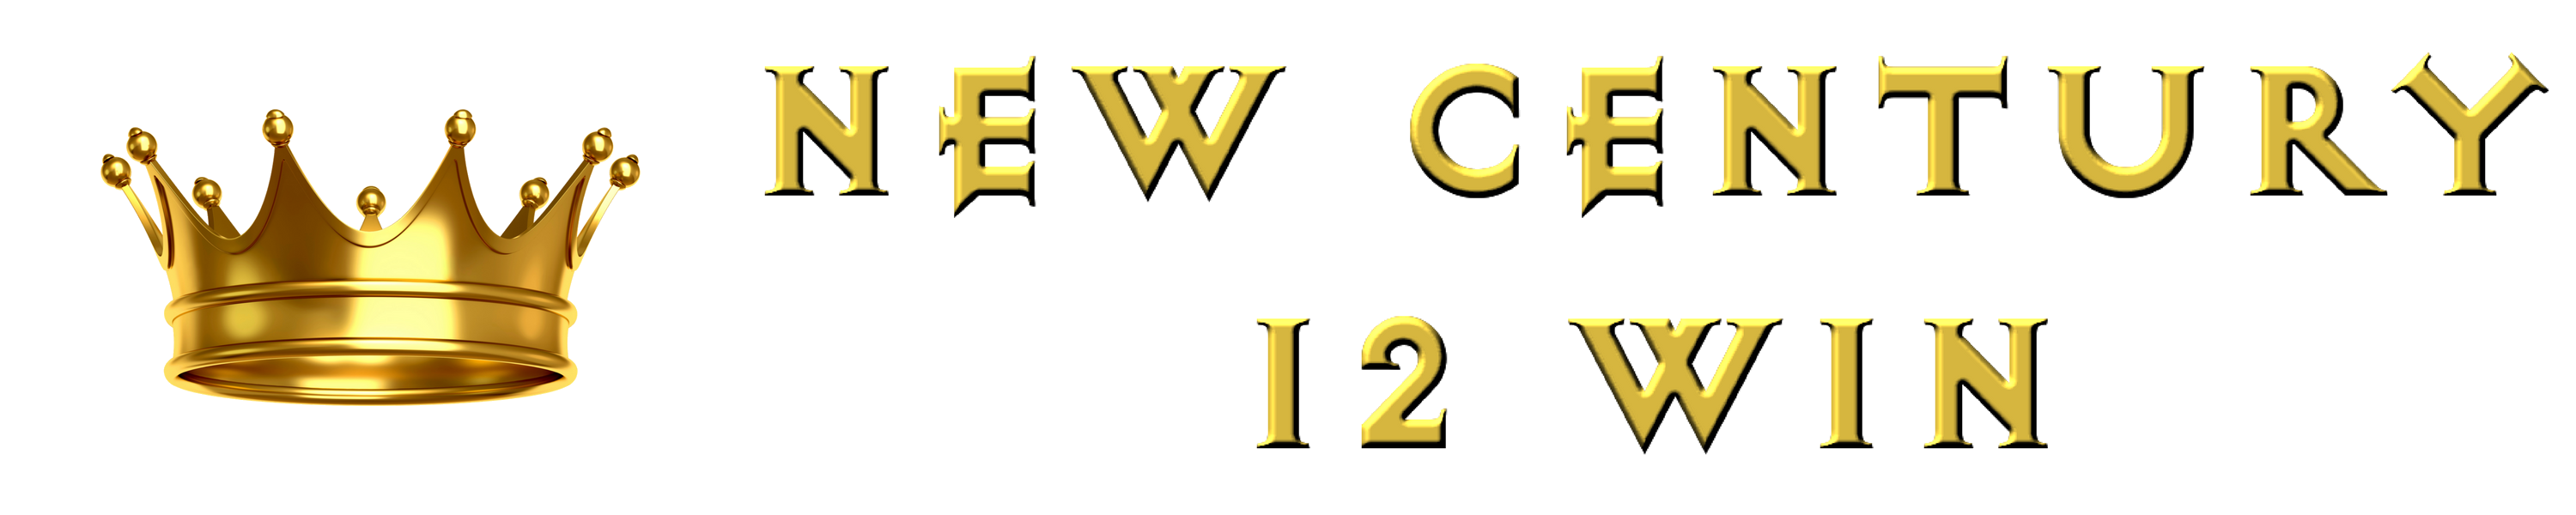 New Century 12Win – SCR888, JOKER123, LIVE22, GW99, LPE88, SKY777